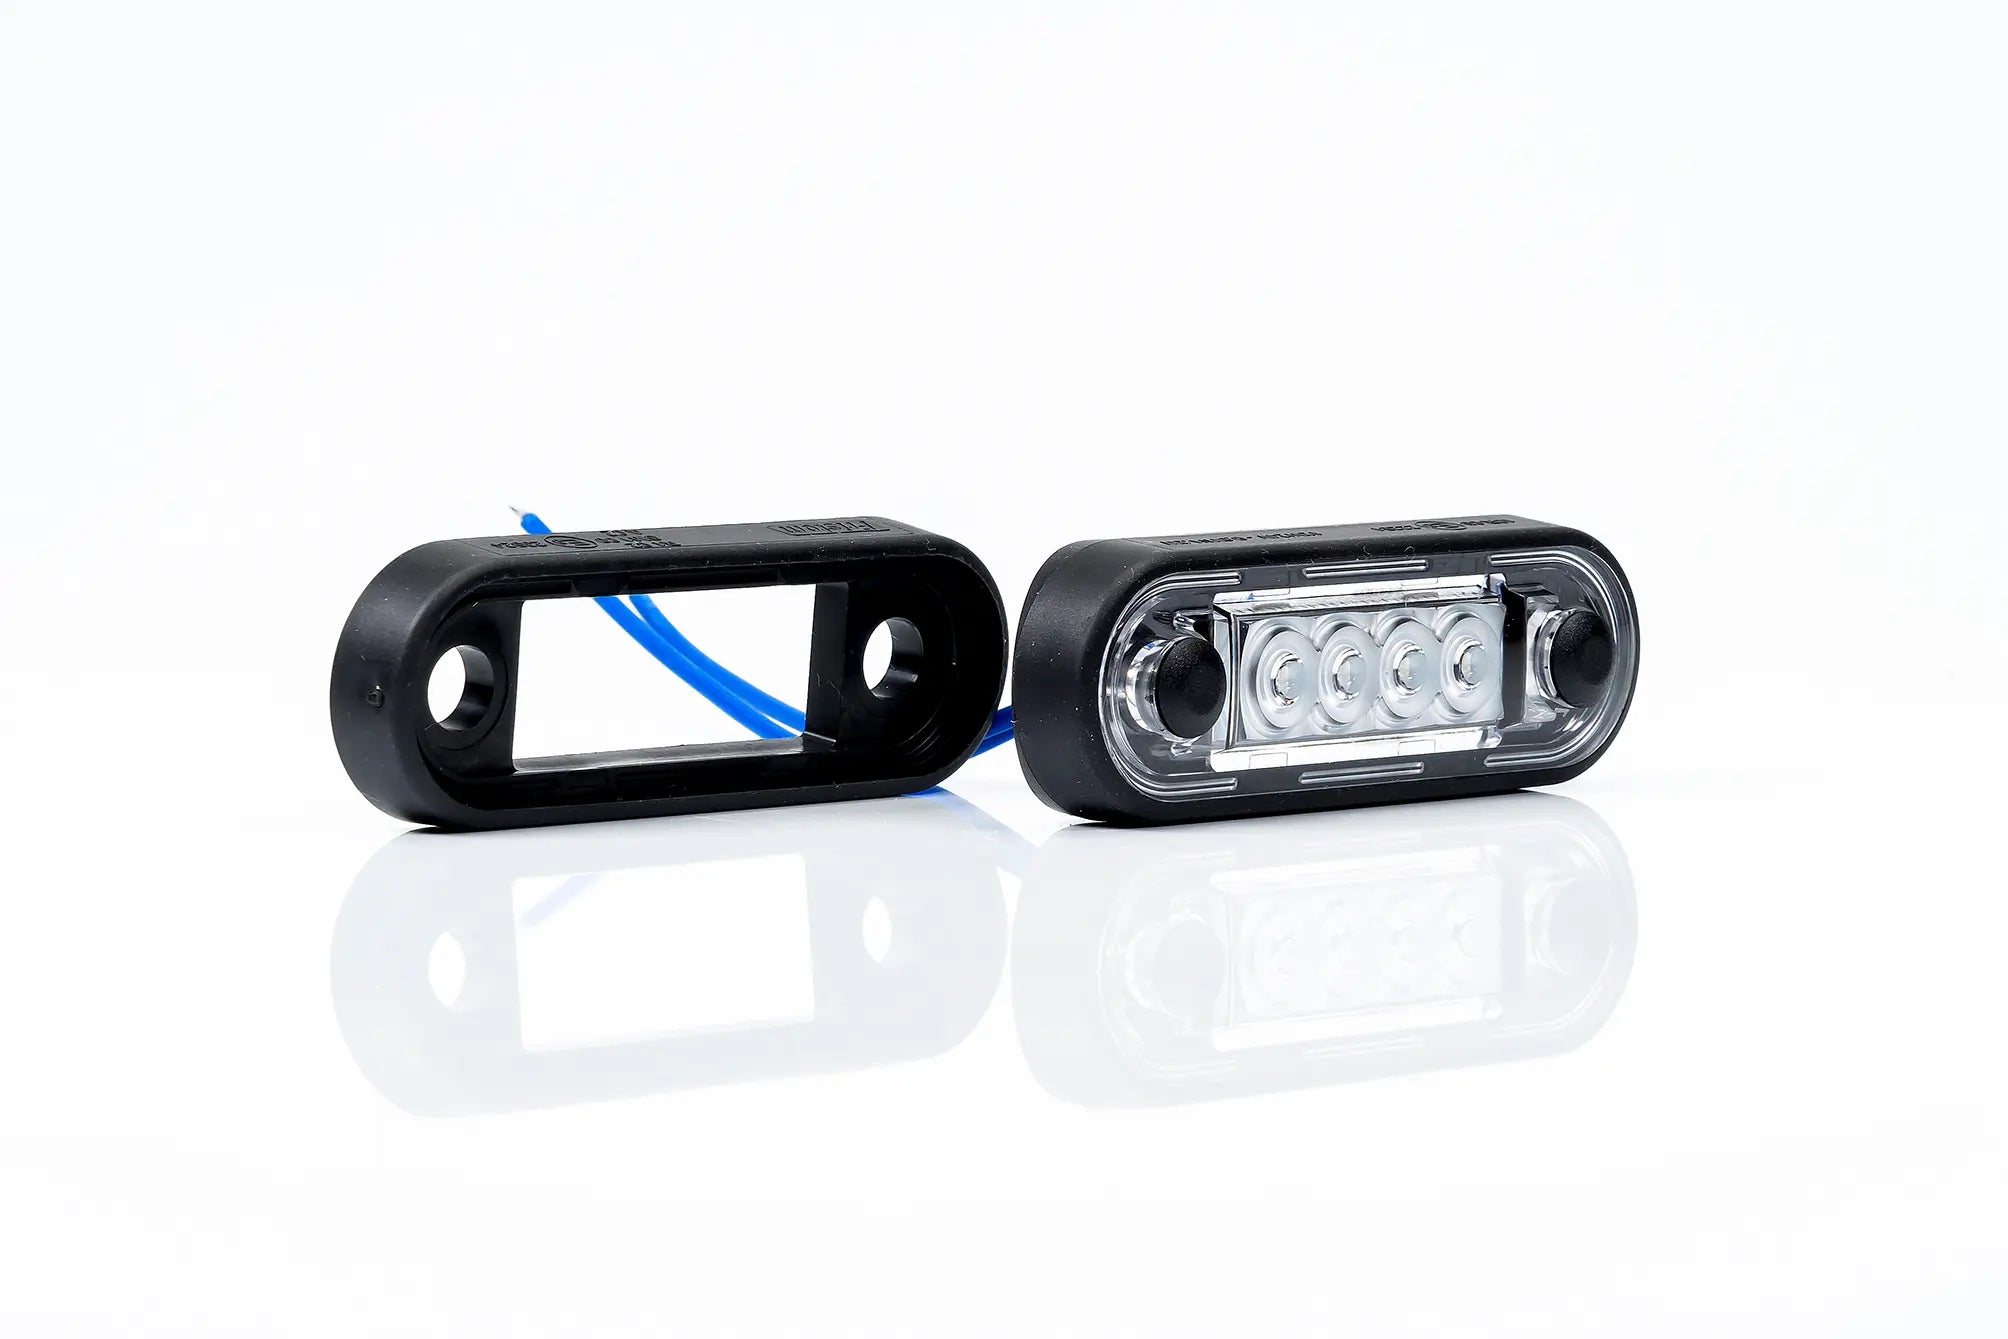 Llum de marcador LED premium per a barres de camions i barres de toro - spo-cs-disabled - spo-default - spo-disabled - spo-notify-me-disa